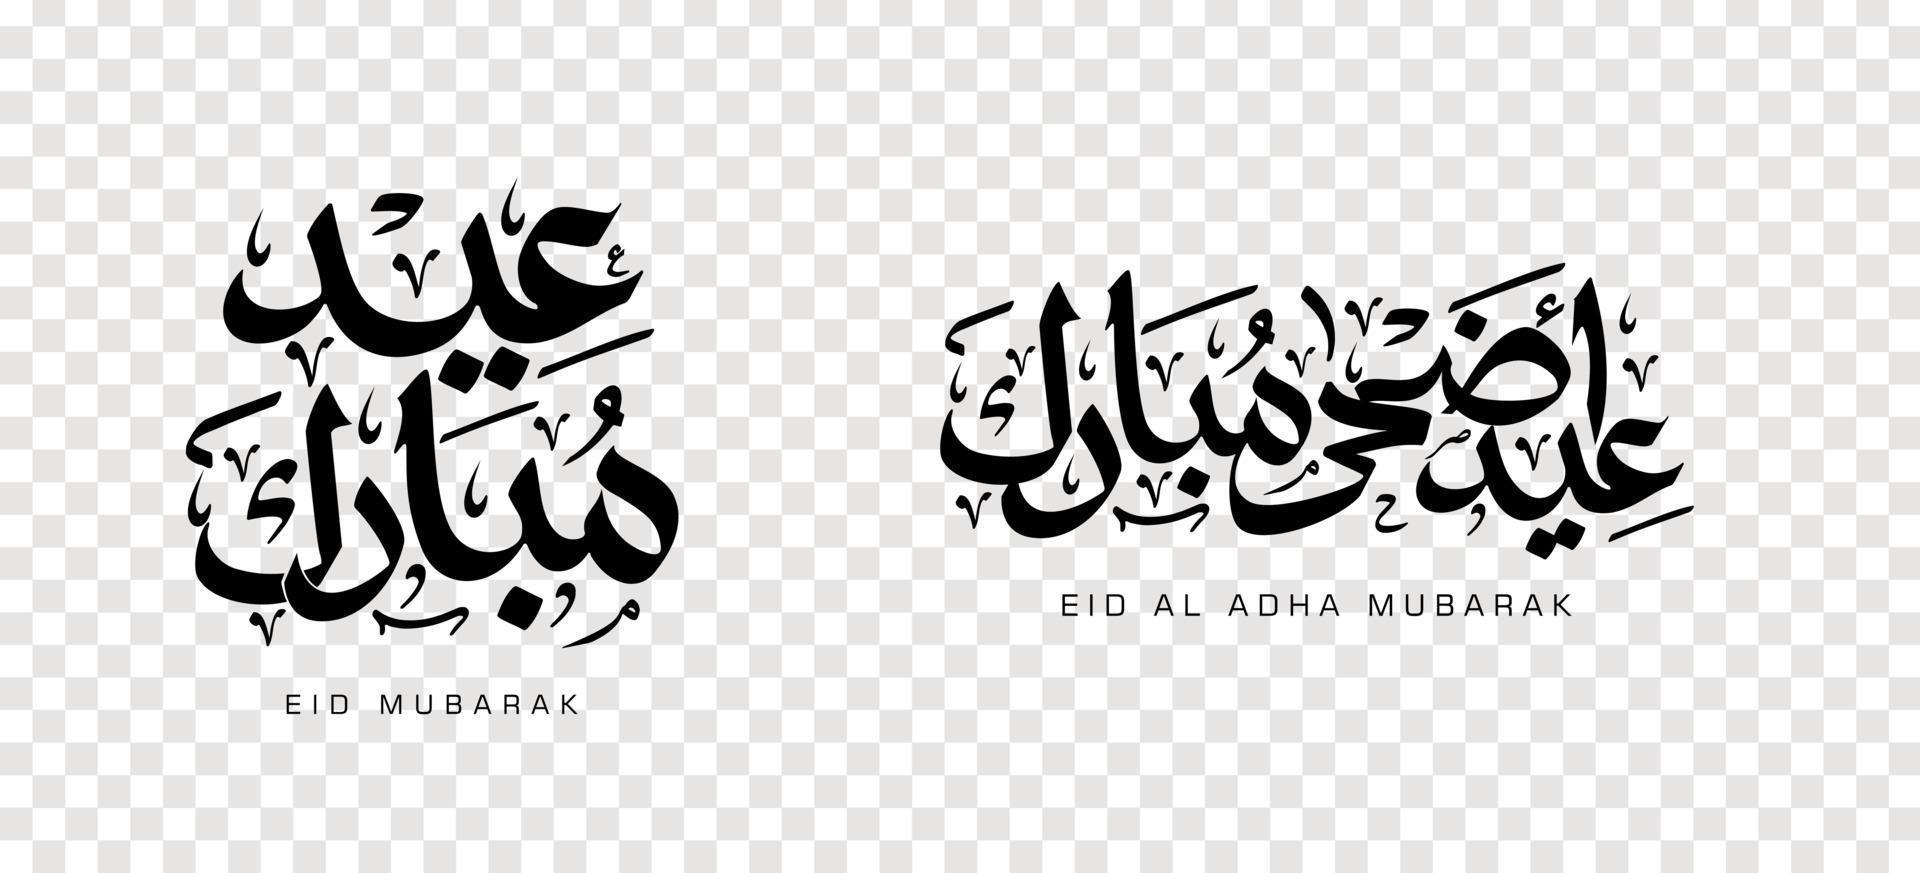 uppsättning av eid adha mubarak i arabisk kalligrafi, designelement. vektor illustration